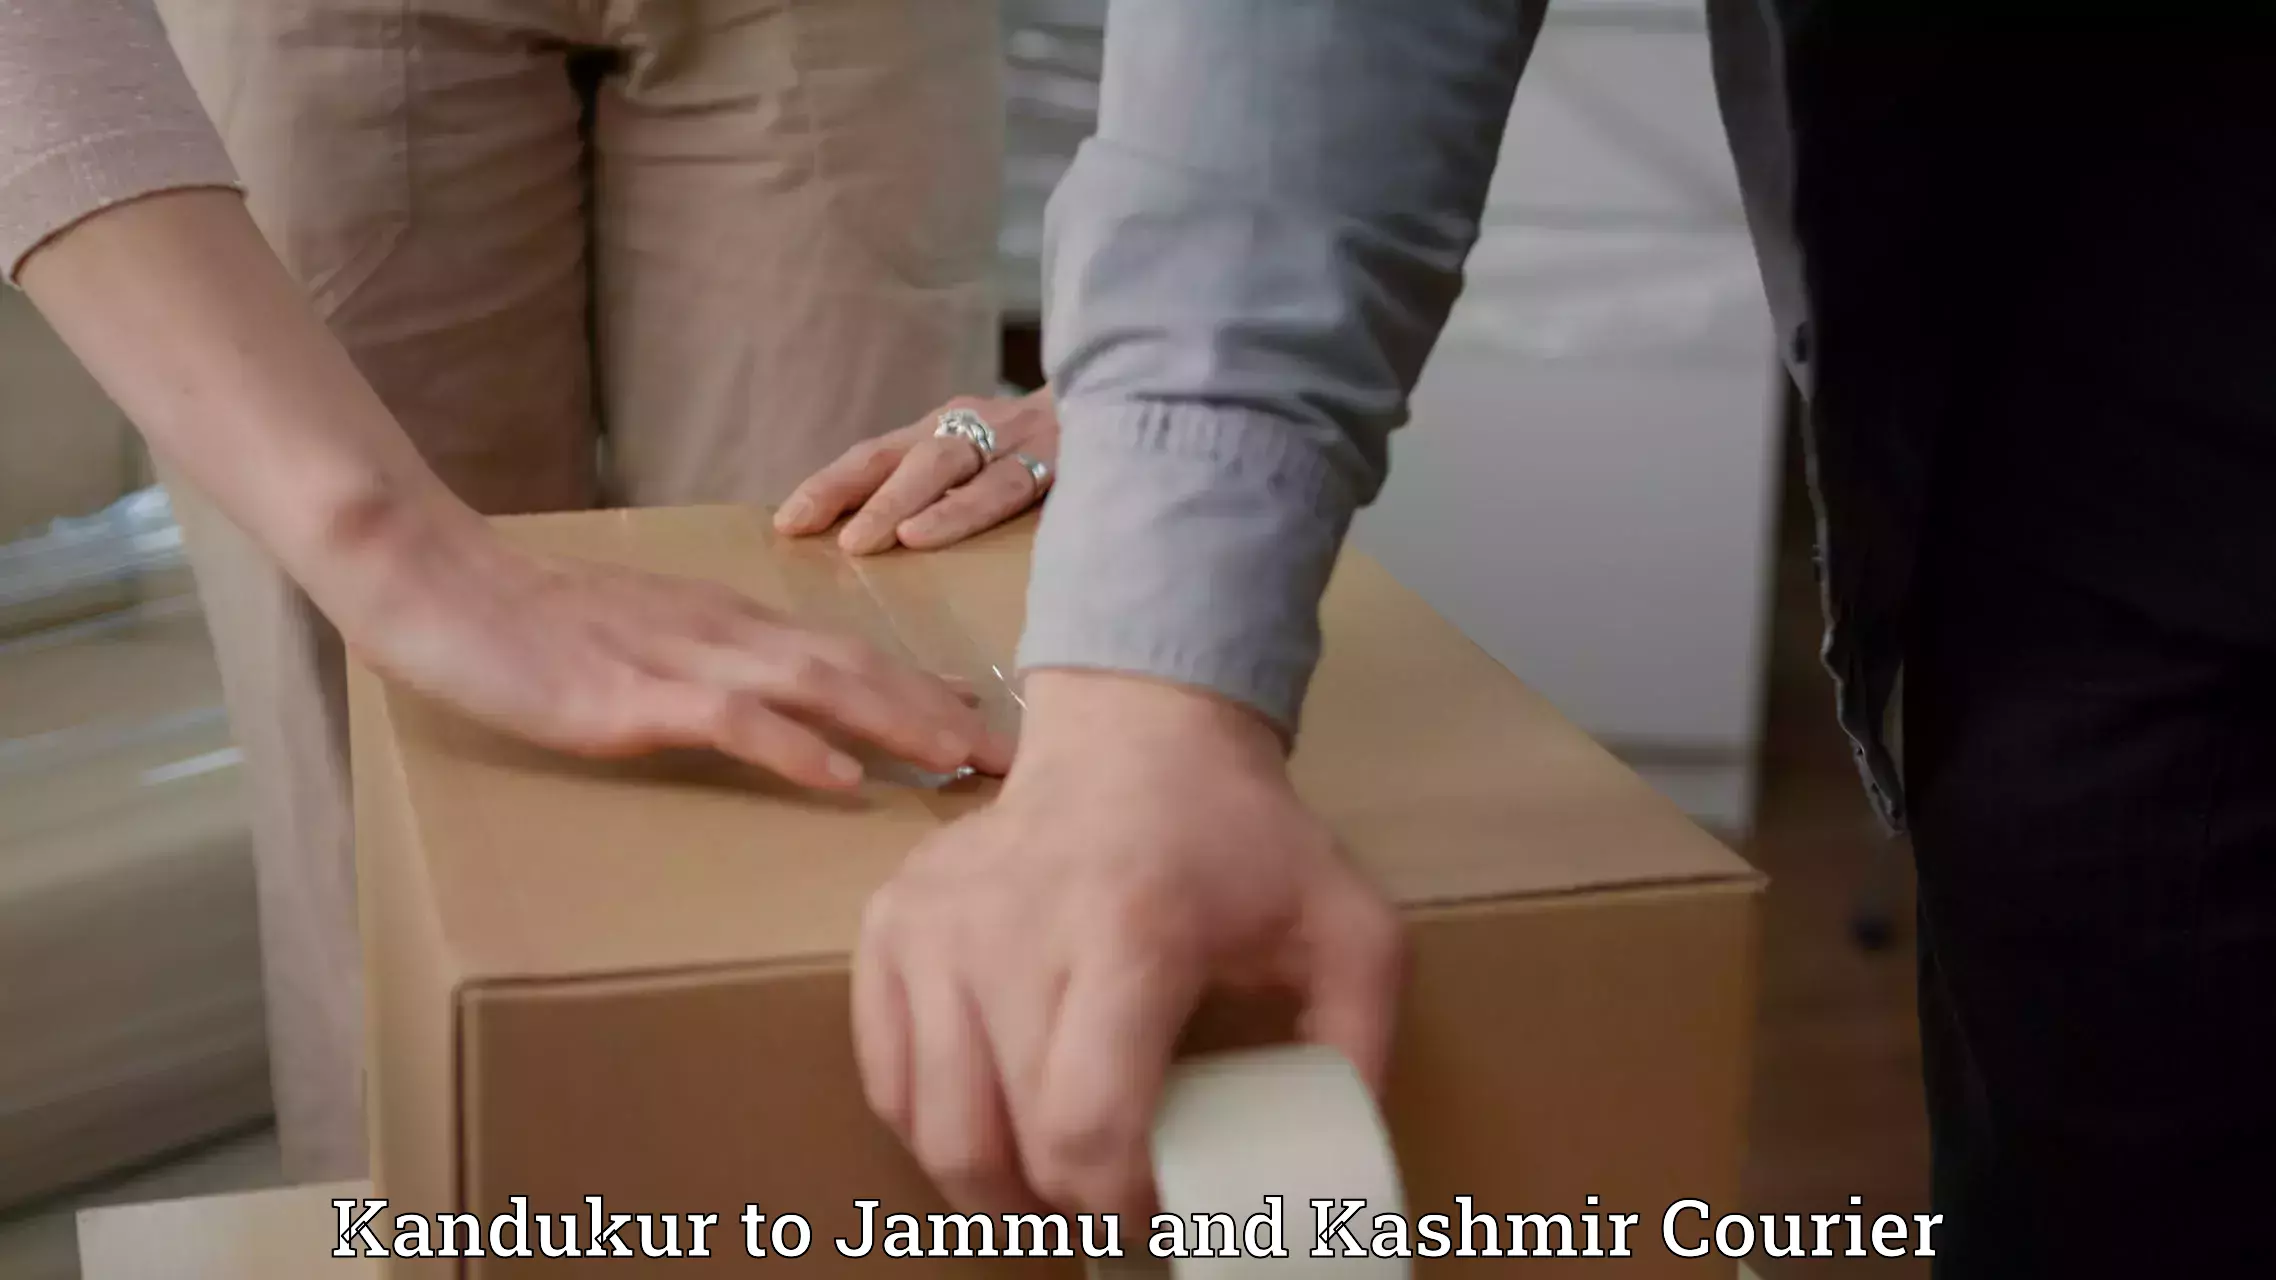 International courier rates Kandukur to Jammu and Kashmir